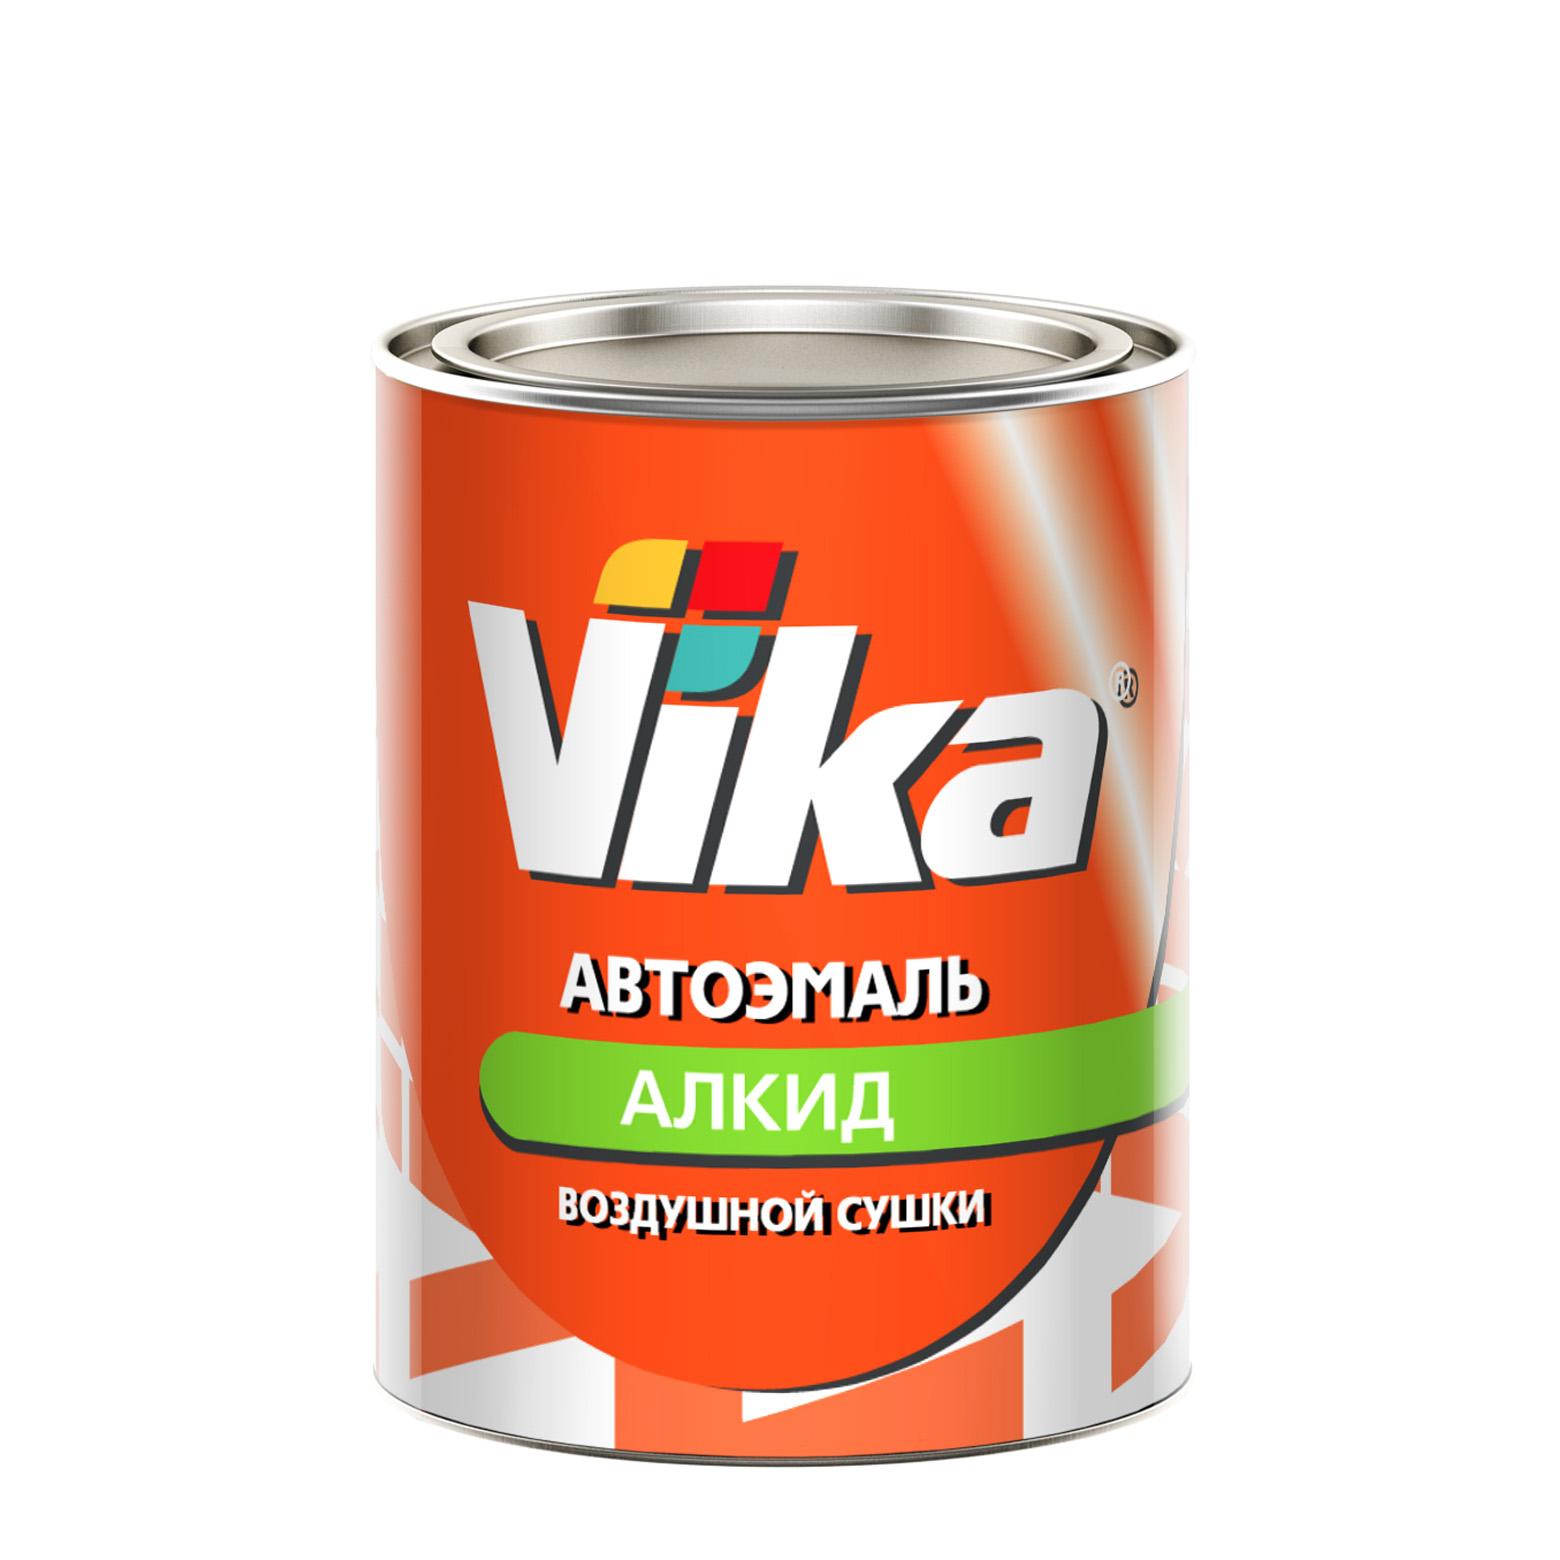 Фото 1 - Автоэмаль Vika-60, цвет 1015 Красная алкидная глянцевая естественной сушки - 0,8 кг.